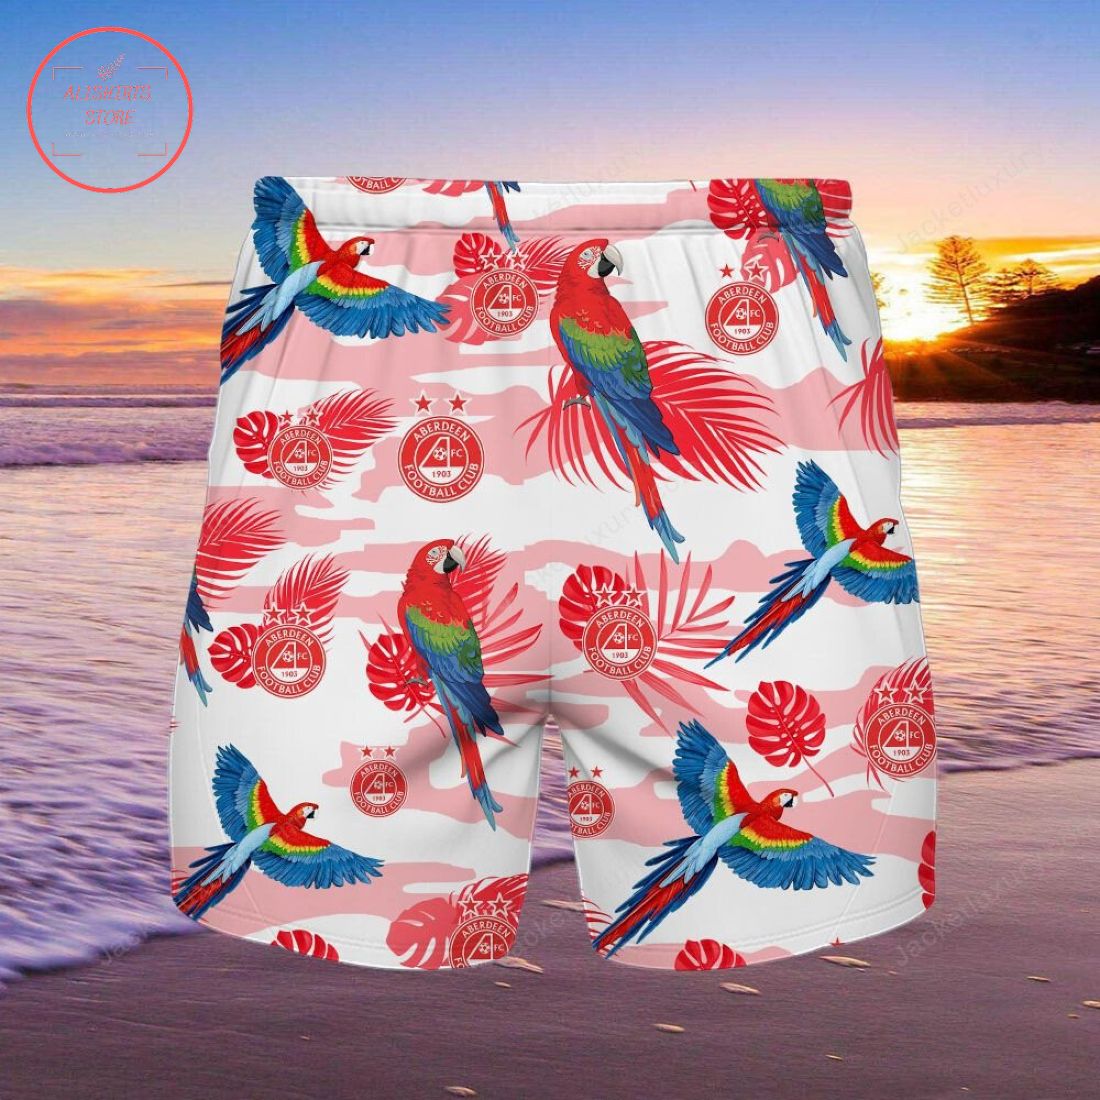 Aberdeen FC Parrot Hawaiian Shirt and Beach Shorts